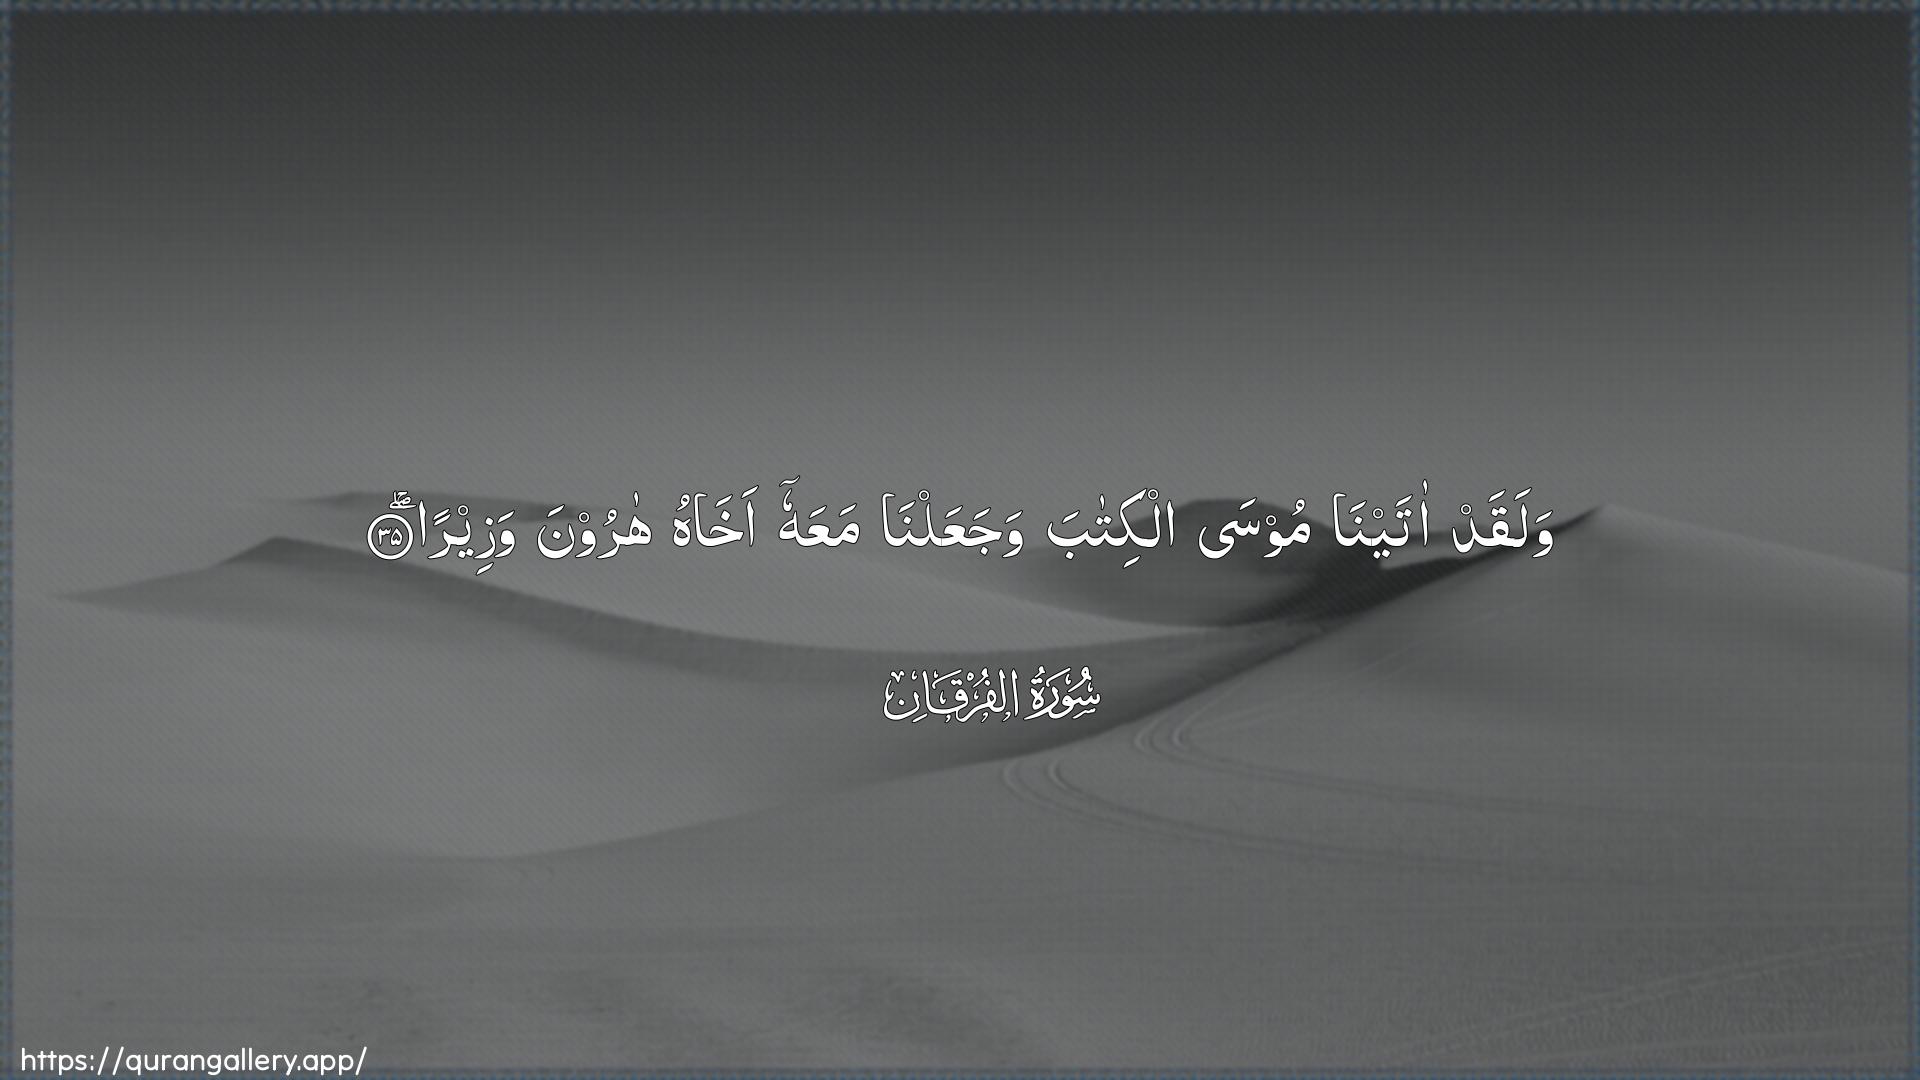 Surah Al-Furqaan Ayah 35 of 25 HD Wallpaper: Download Beautiful horizontal Quran Verse Image | Walaqad atayna moosaalkitaba wajaAAalna maAAahu akhahu haroonawazeera